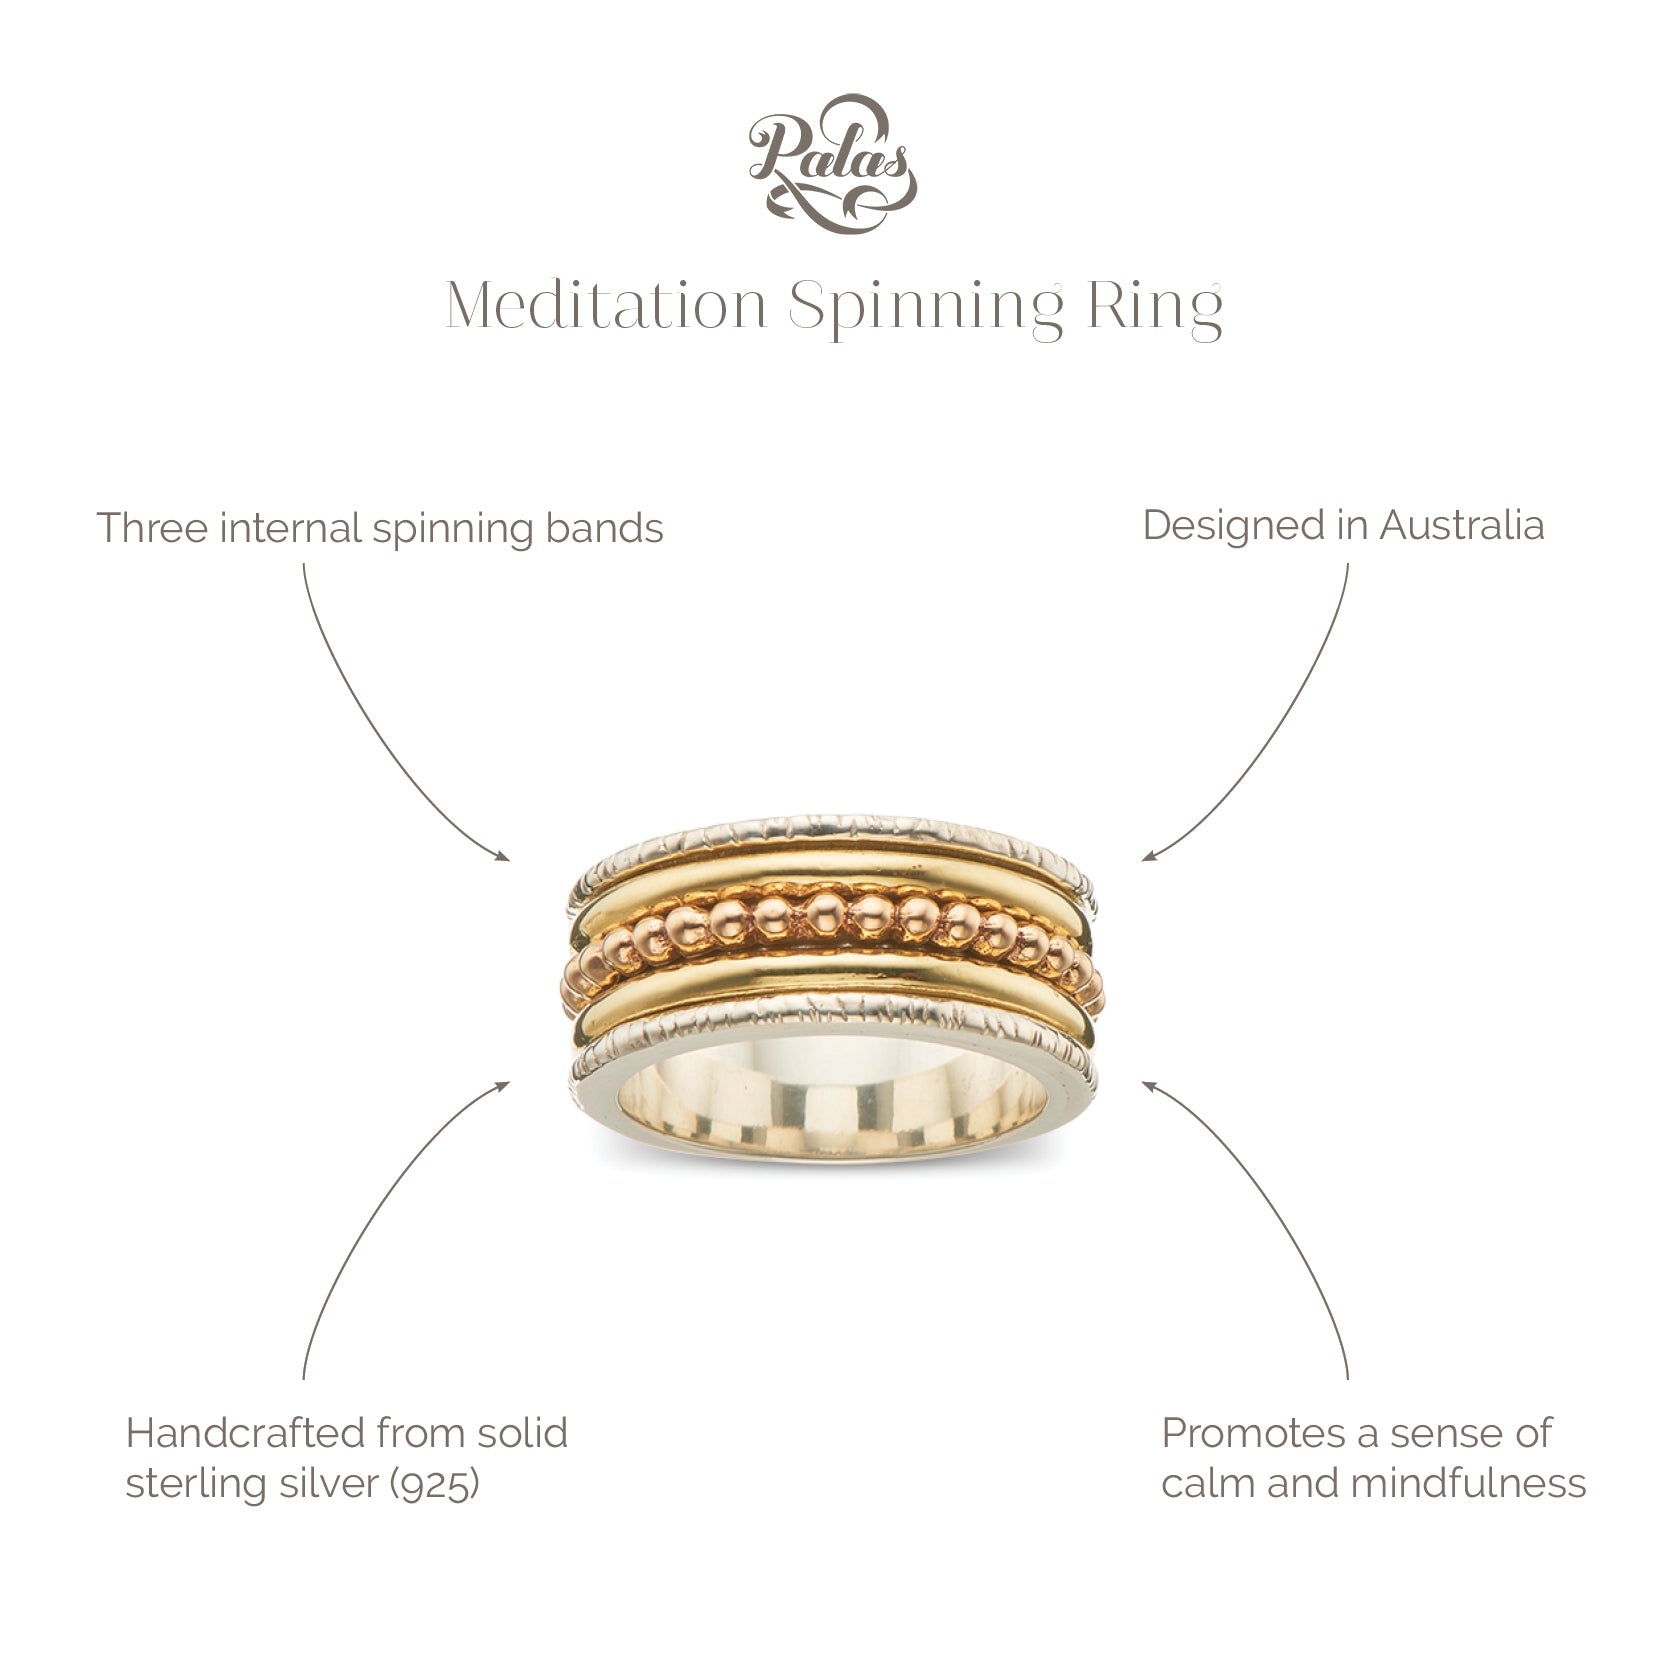 Meditation spinning ring